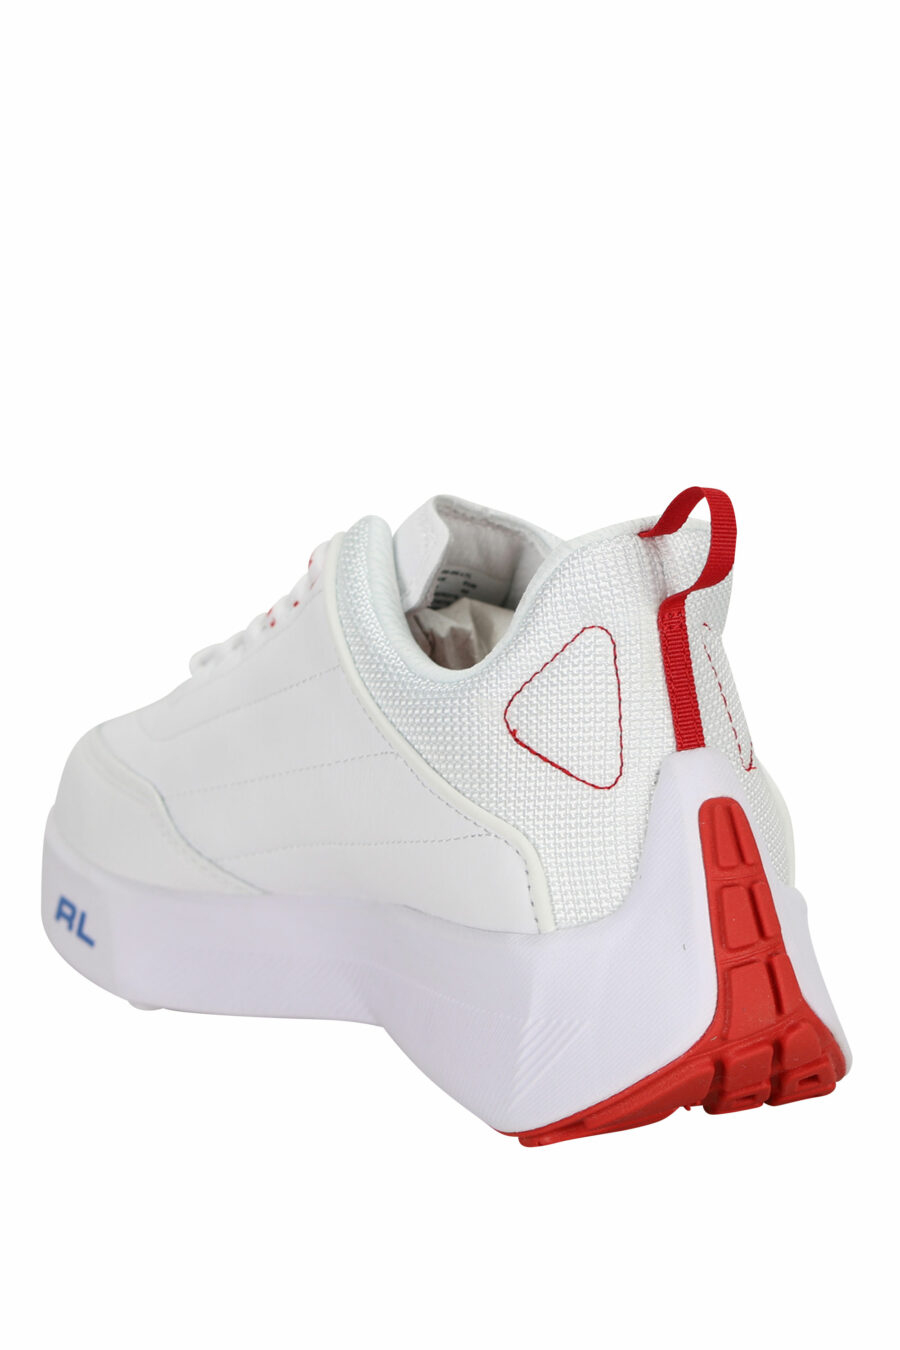 Baskets blanches avec mini-logo et détails rouges - 3616535649279 3